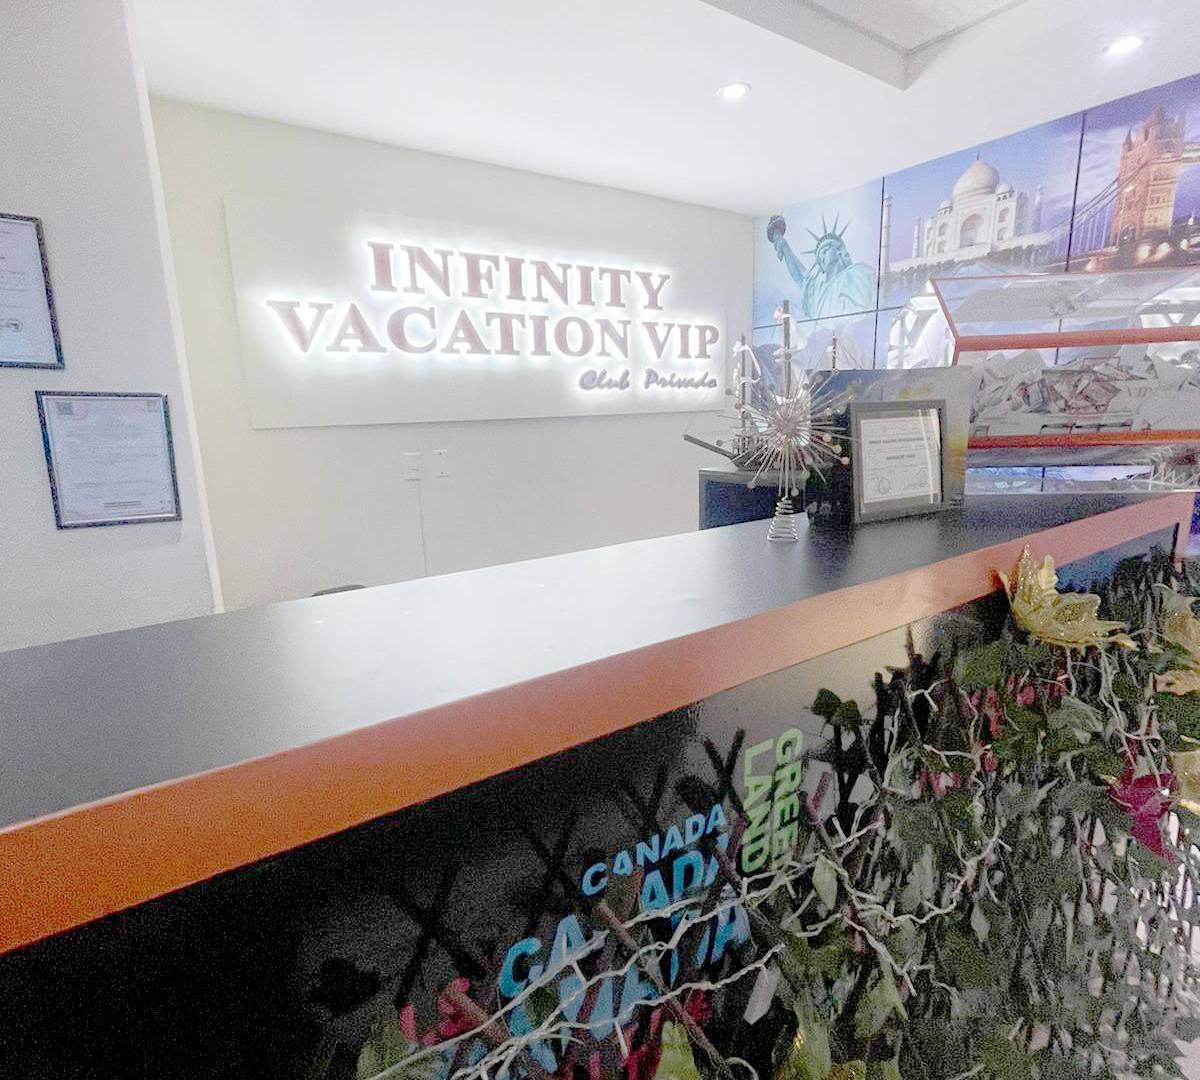 $!Al menos siete familias denunciaron ante las autoridades ser estafadas por la empresa Infinity Vacation VIP Internacional S.A., liderada por colombianos. Las autoridades investigan un caso que sobrepasa los 84,000 lempiras.